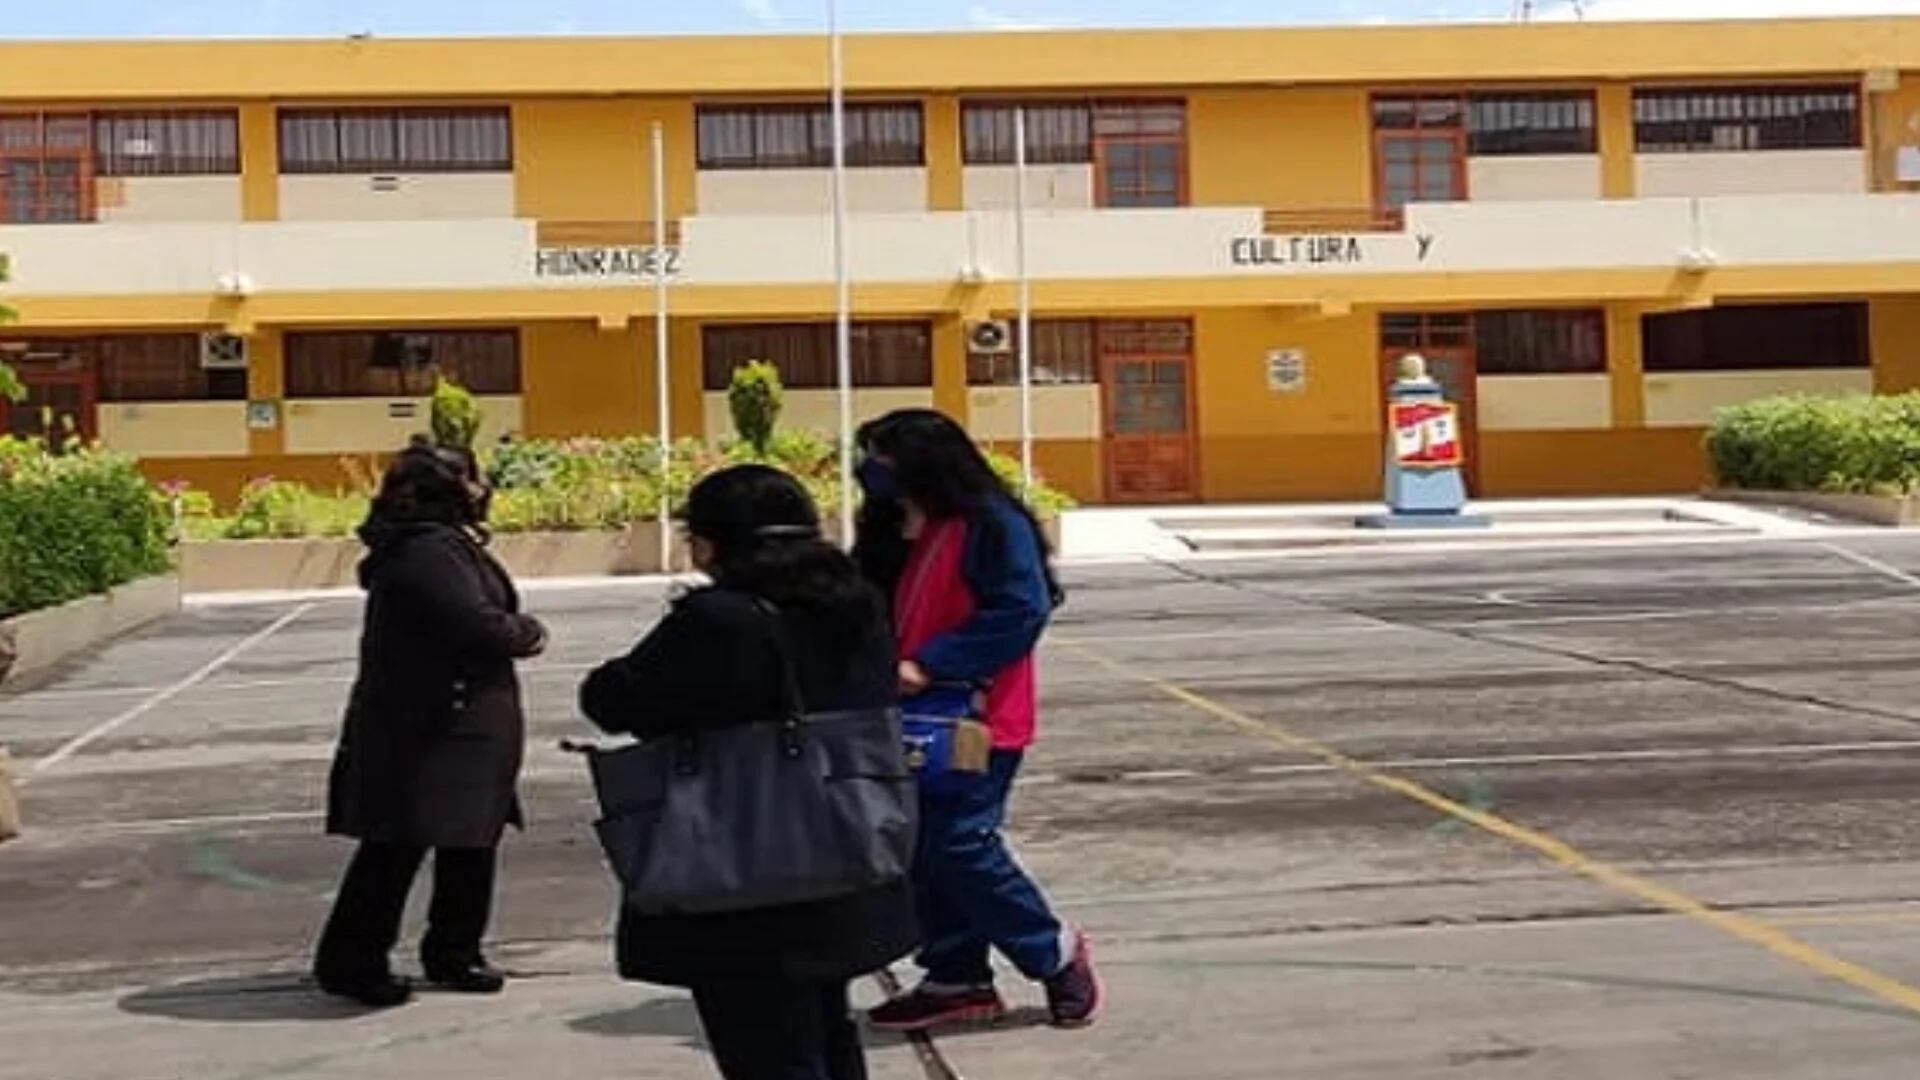 Escolares de Arequipa hicieron reto viral y terminaron en el hospital por beber mezcla de lejía, vinagre y alcohol 